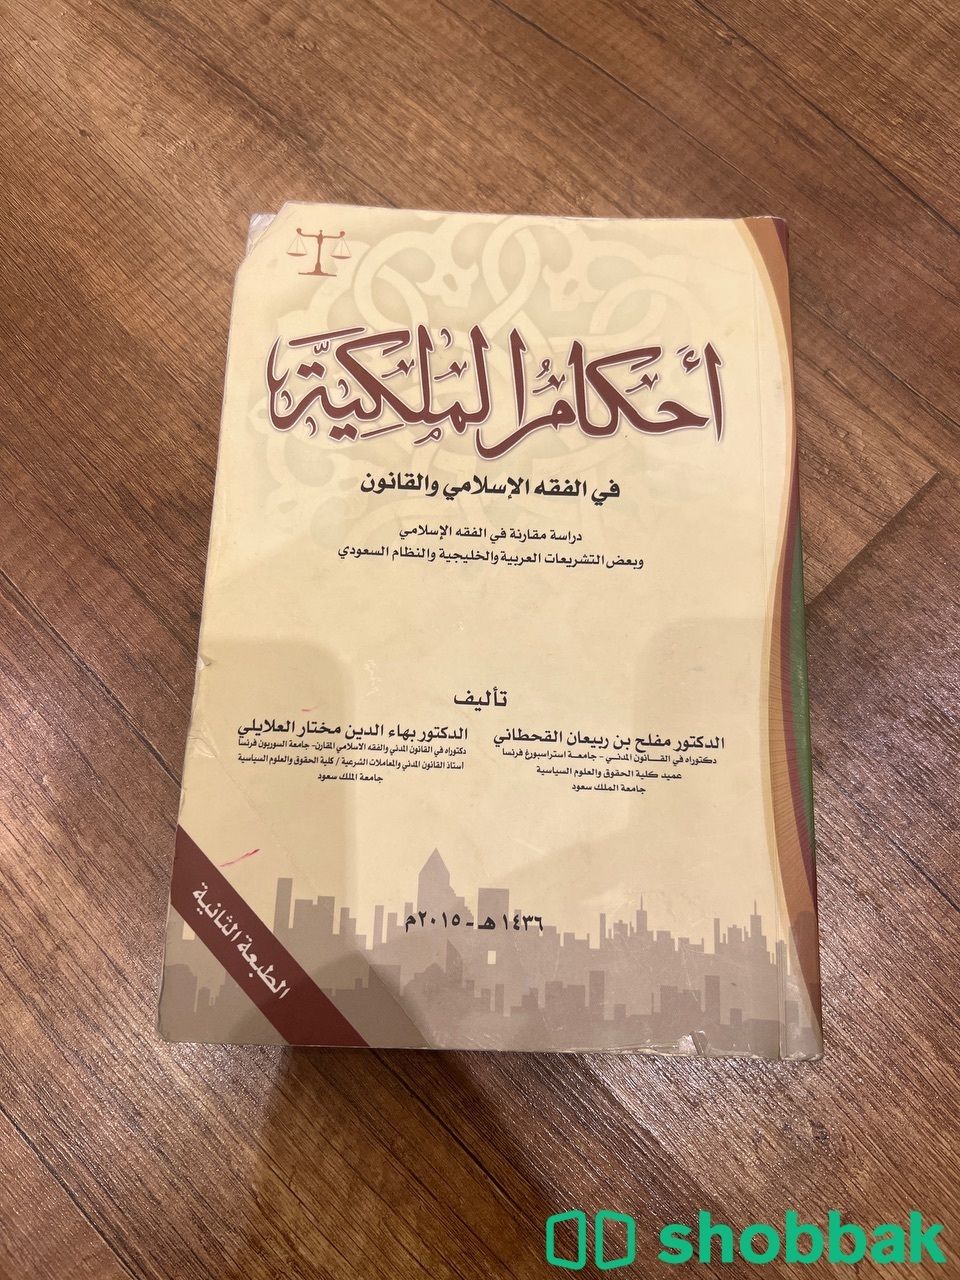  كتاب احكام الملكية في الفقة الاسلامي والقانون  Shobbak Saudi Arabia